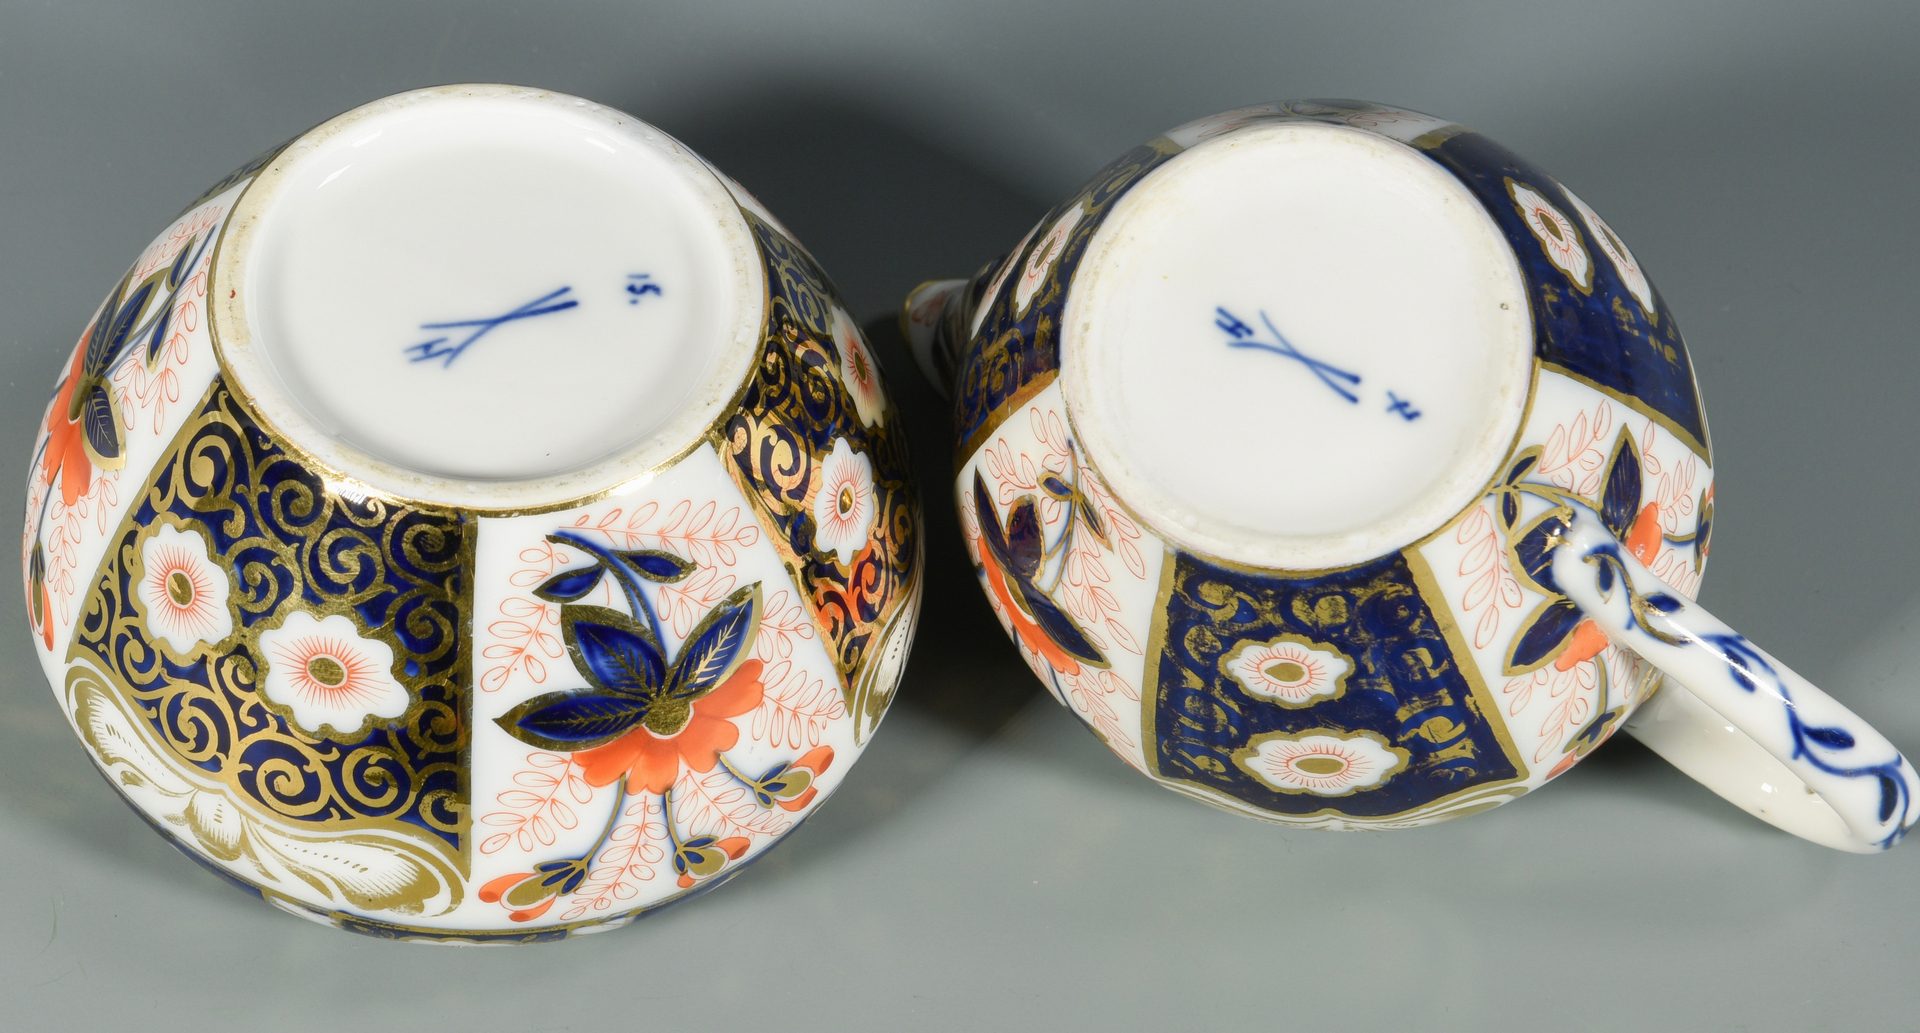 Lot 681: 13 pcs English Imari style Porcelain, 19th c.-early 20th c.